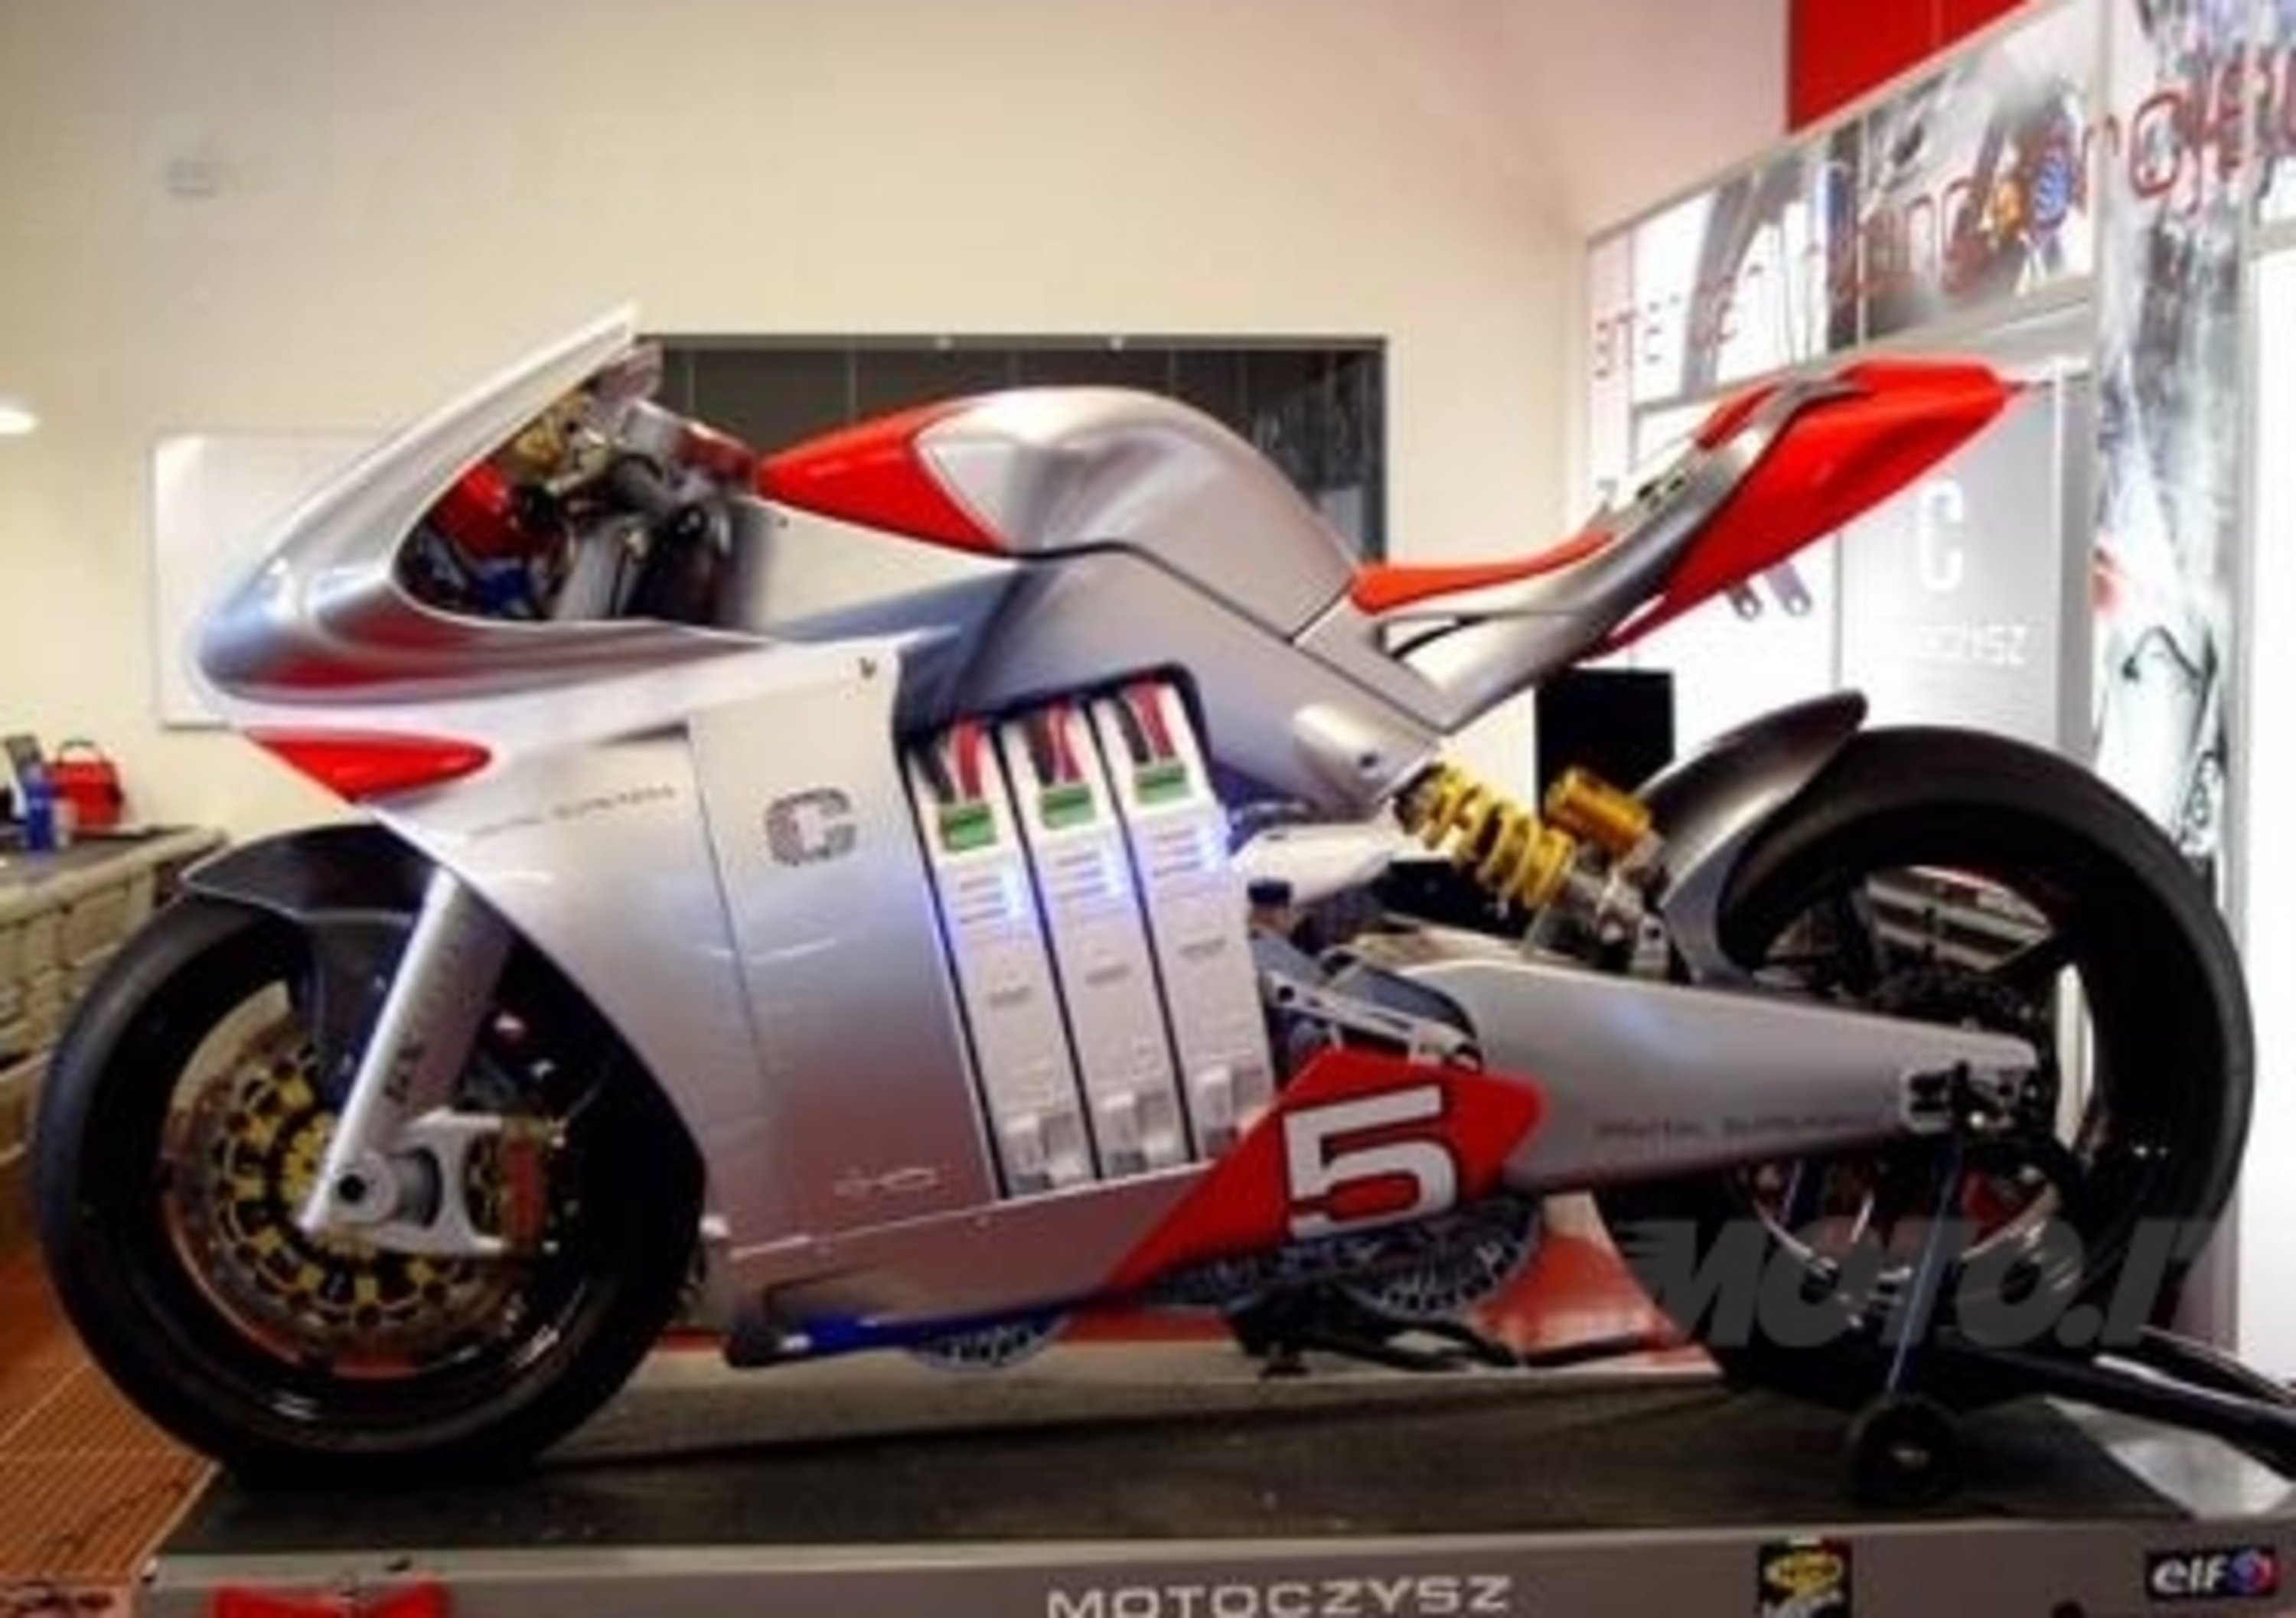 200 milioni di motocicli elettrici entro il 2016